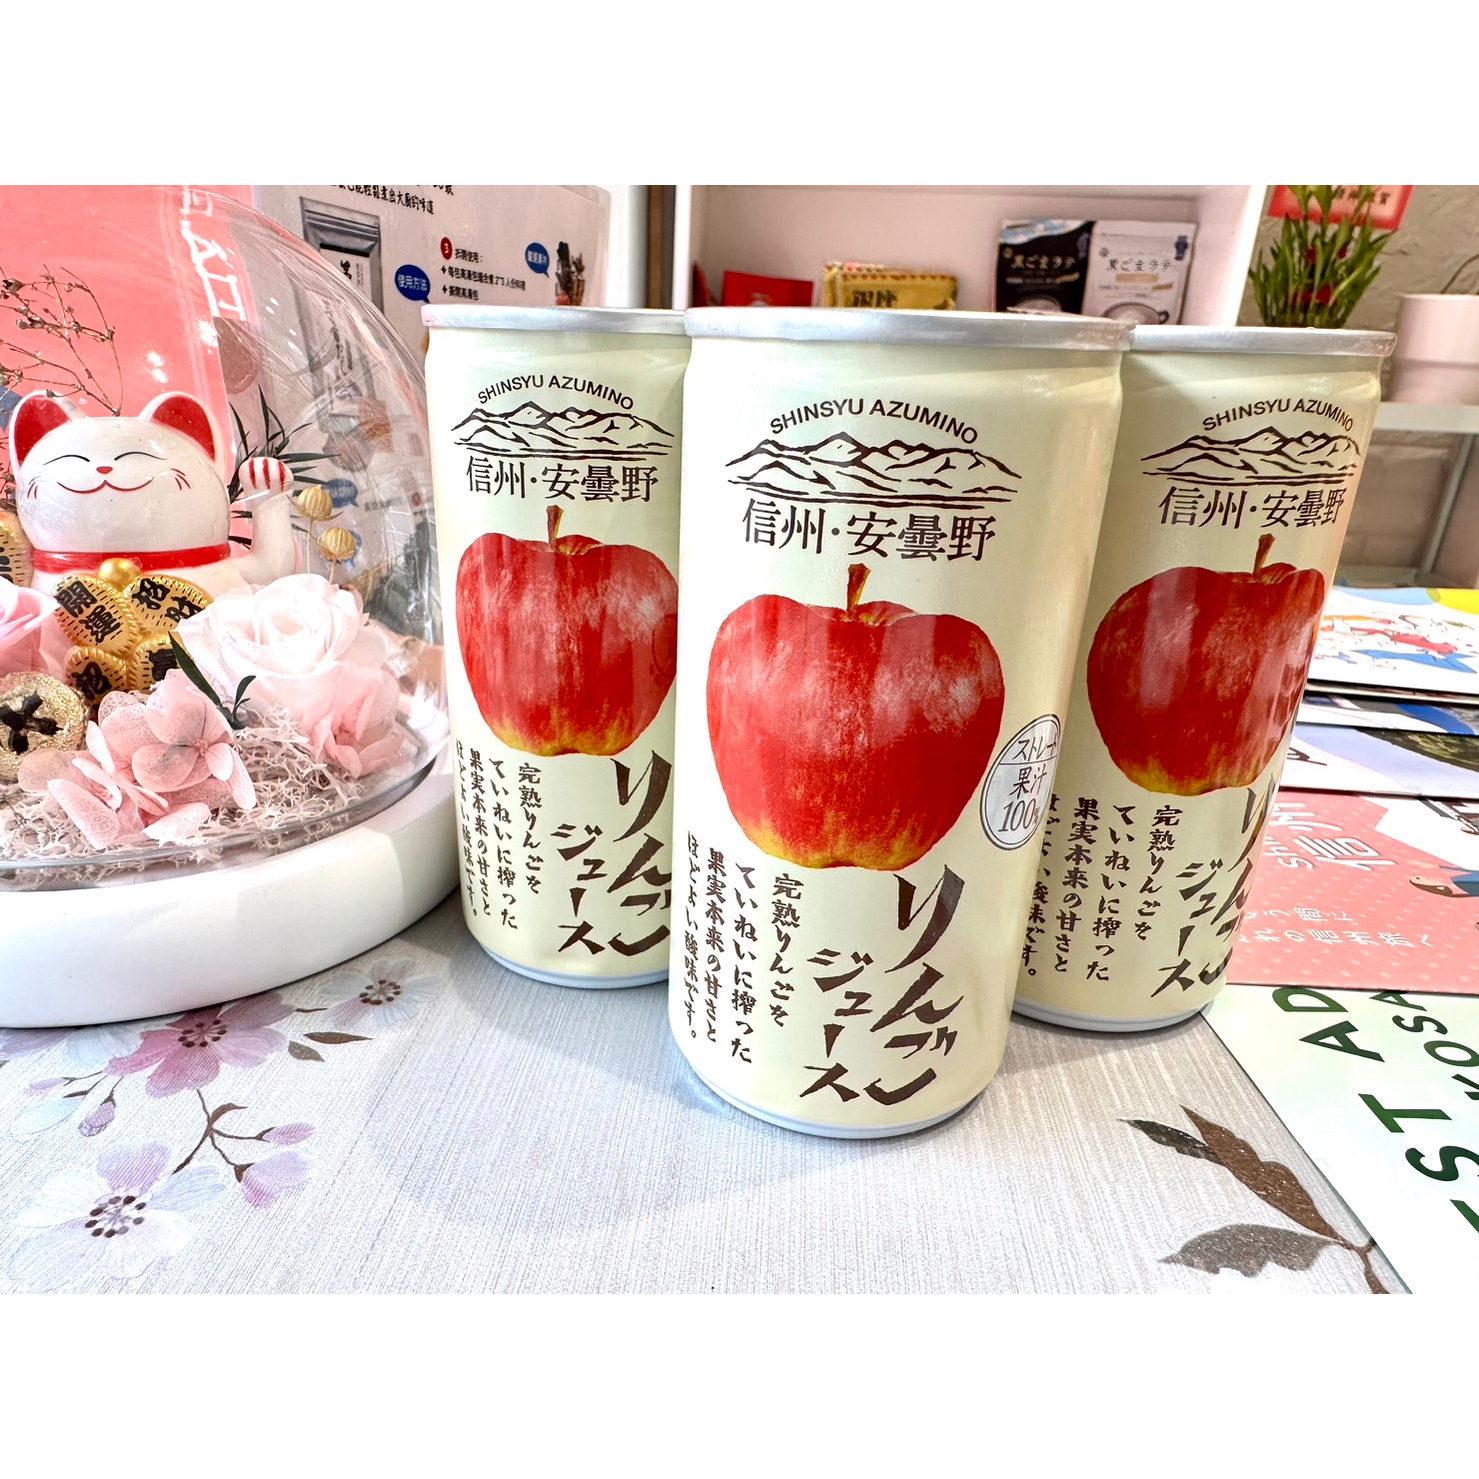 【現貨】日本純蘋果汁 Gold-Pak 信州蘋果汁 安曇野蘋果汁 190ml